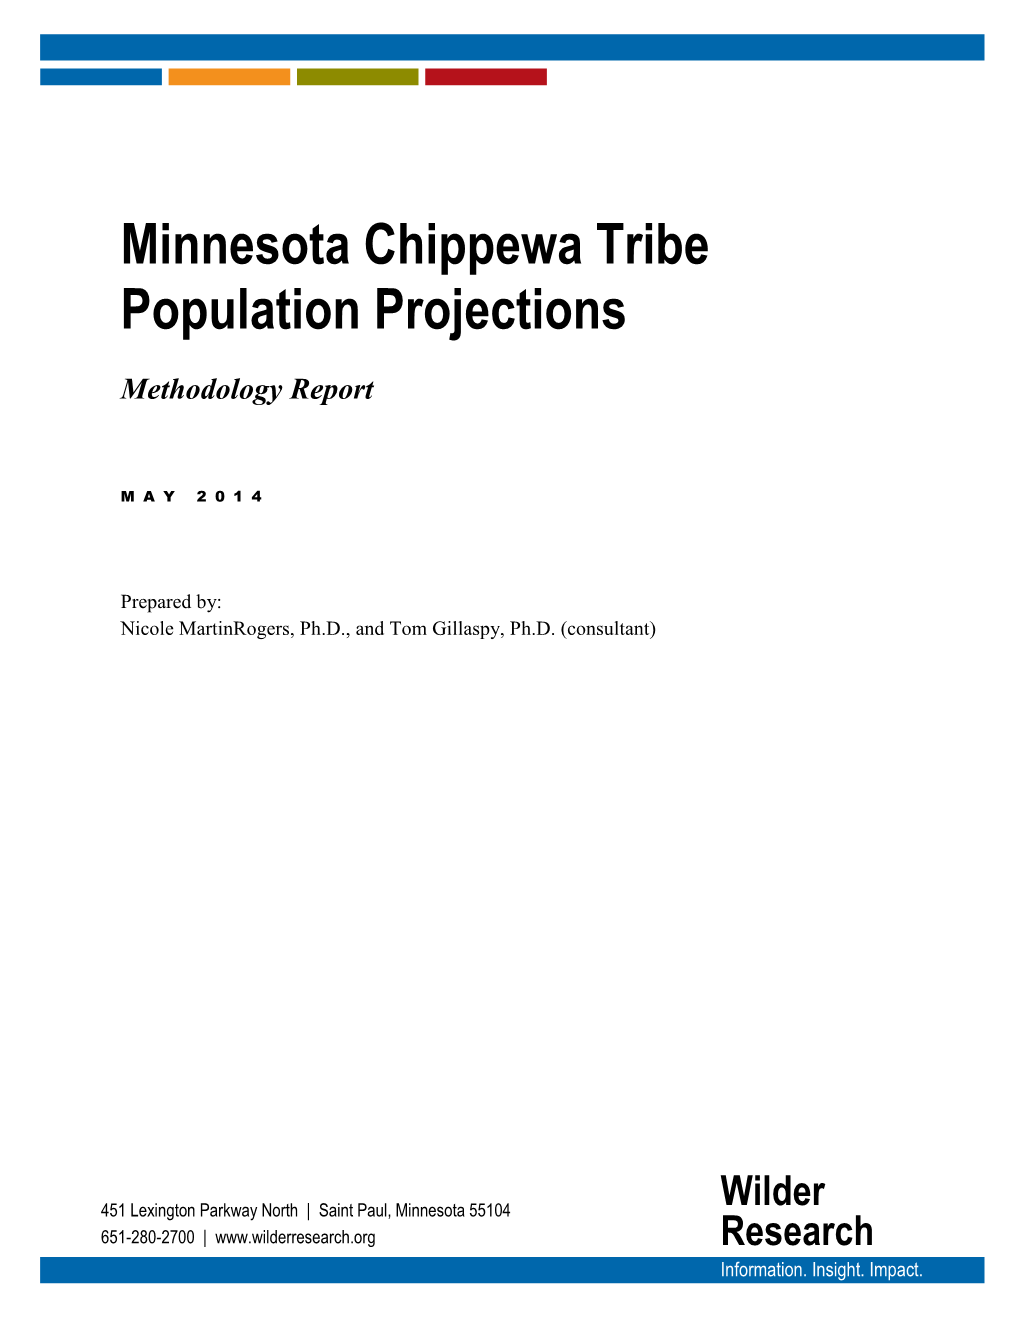 Minnesota Chippewa Tribe Population Projections